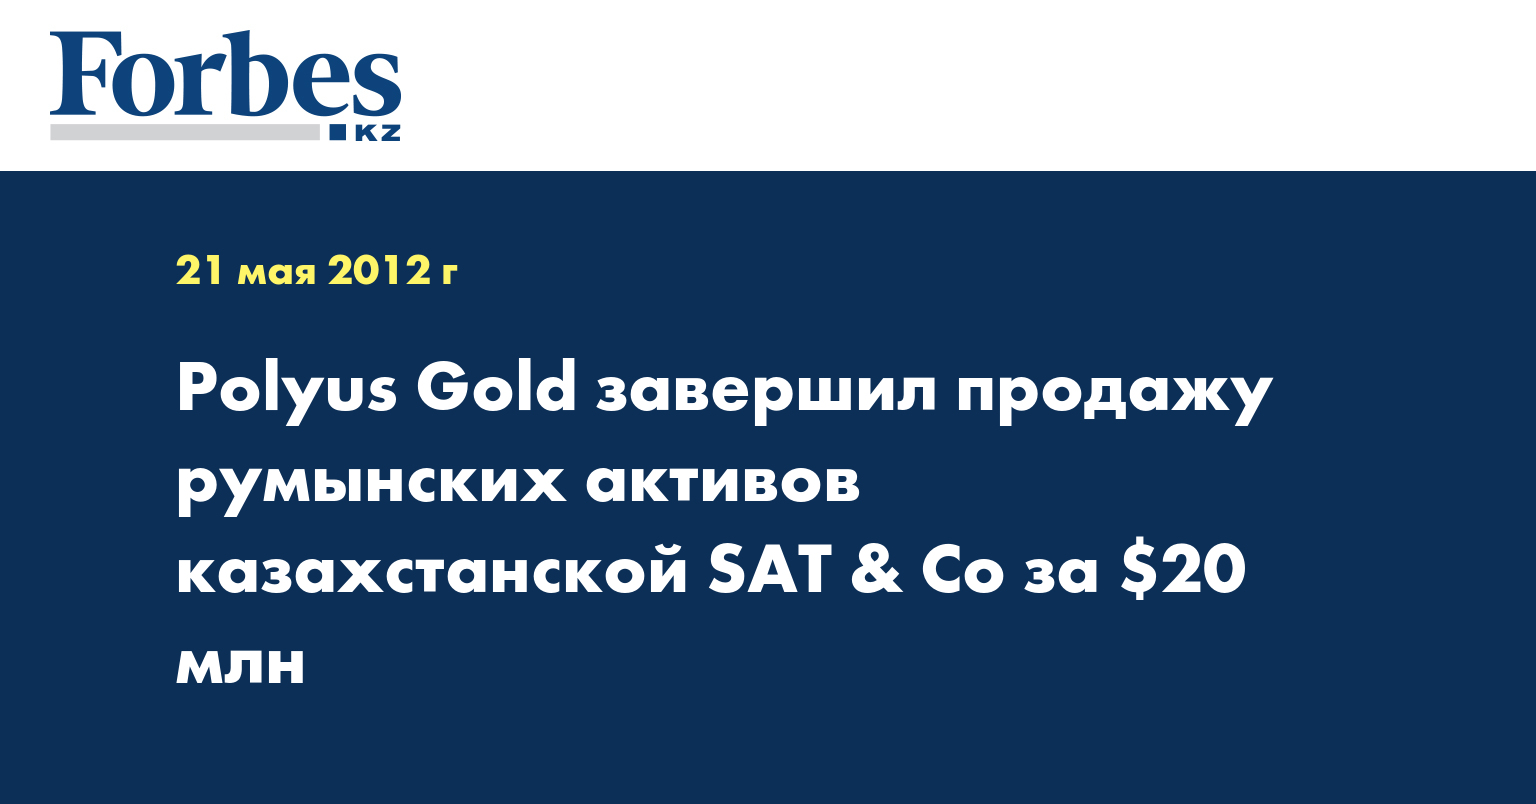 Polyus Gold завершил продажу румынских активов казахстанской SAT & Co за $20 млн